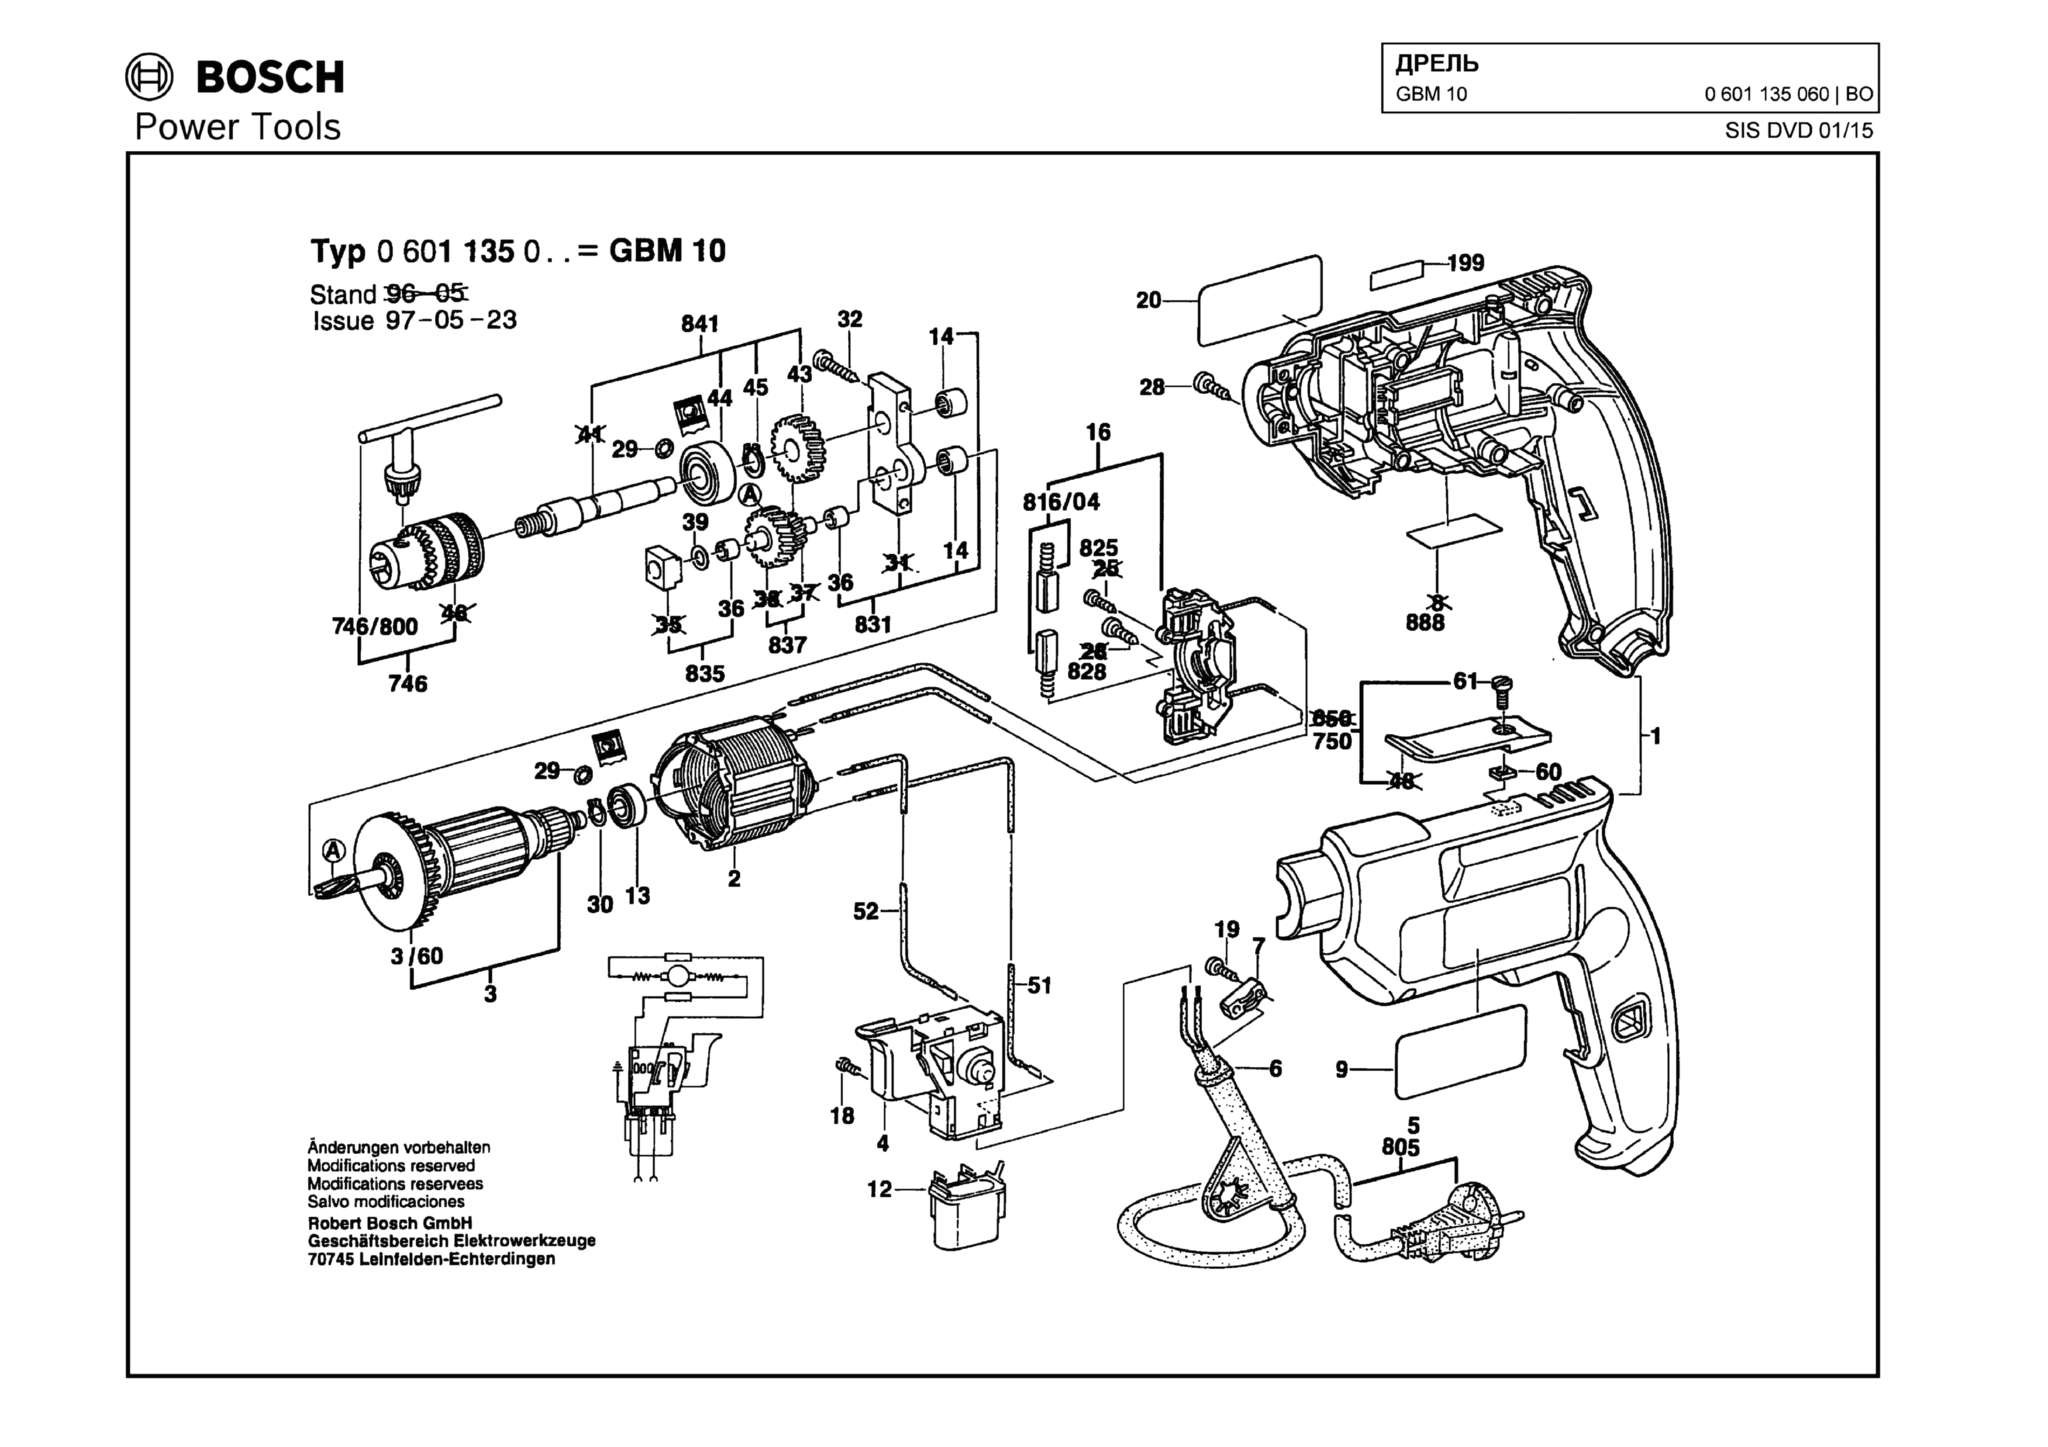 Запчасти, схема и деталировка Bosch GBM 10 (ТИП 0601135060)